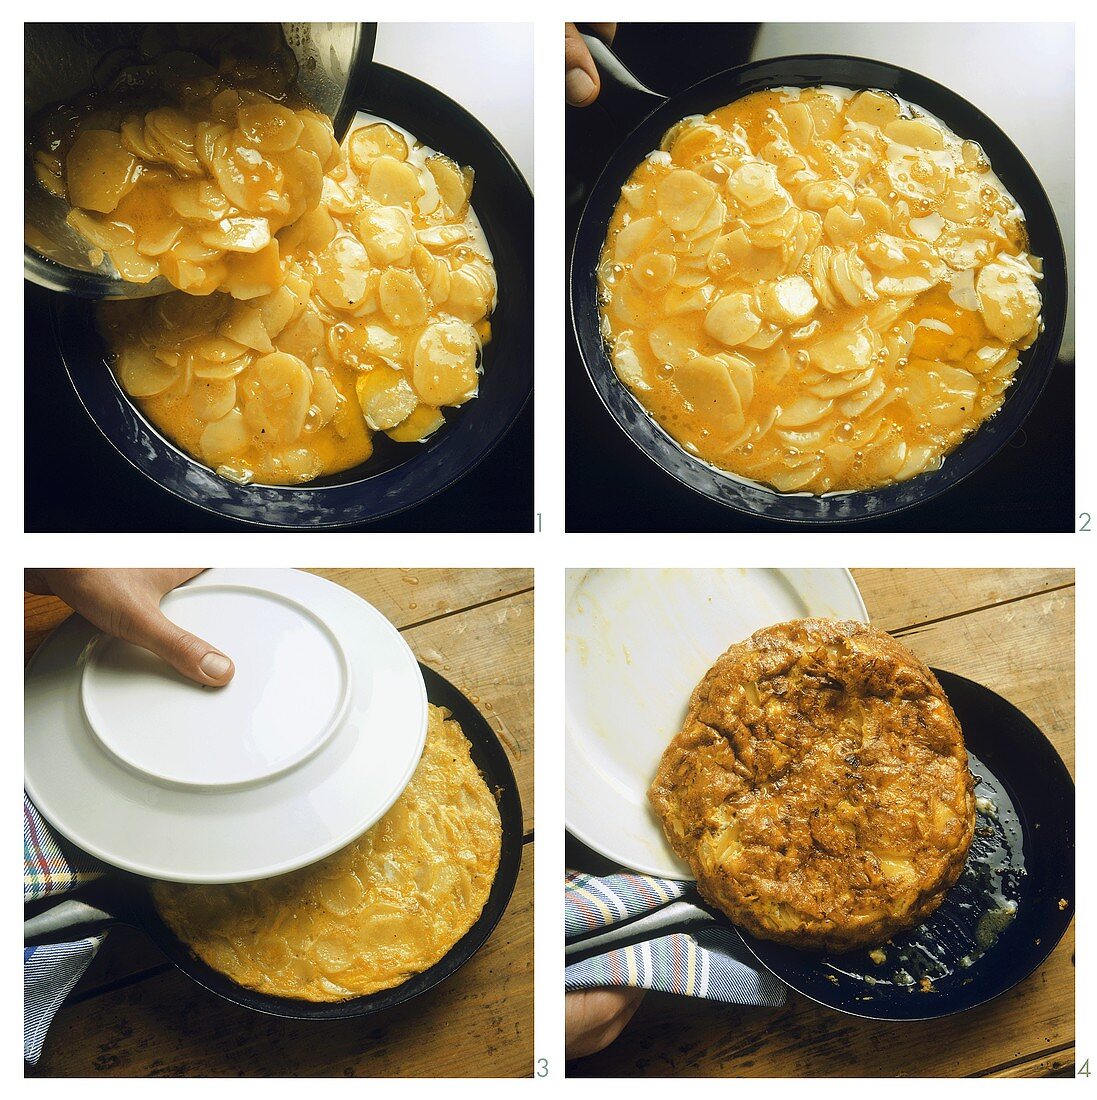 Making tortilla de patatas (potato omelette)